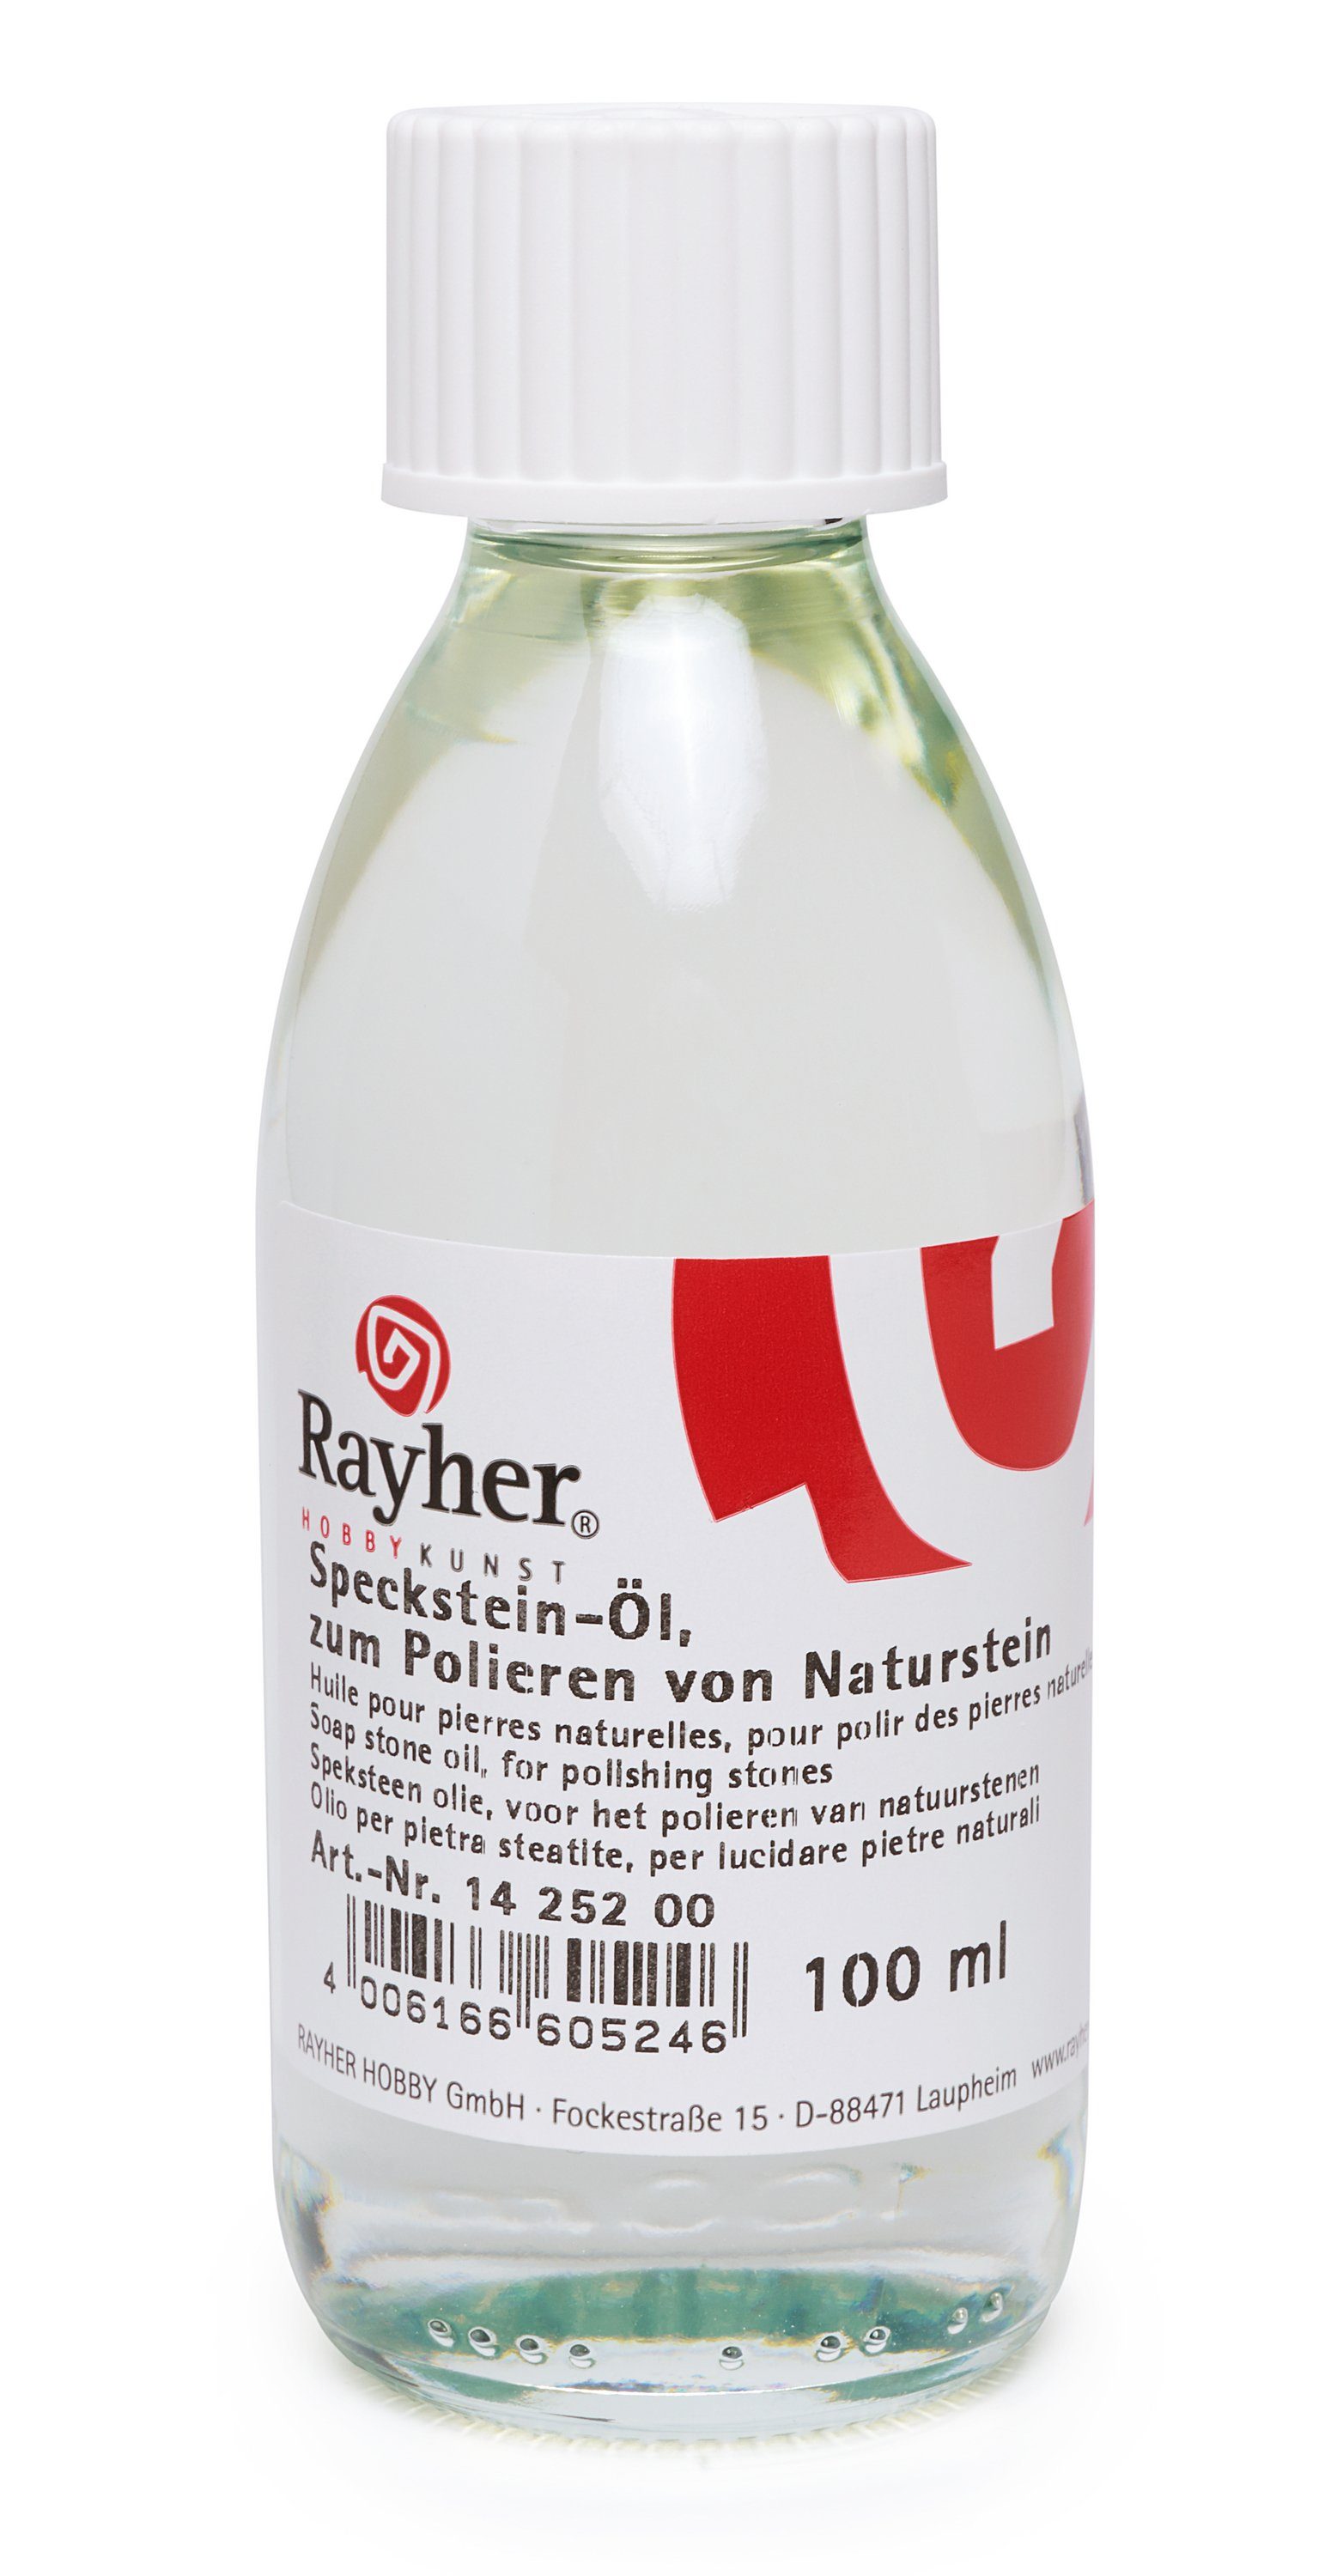 Rayher Reinigungs-Set RAYHER Speckstein-Öl, 100 ml | Reinigungs-Sets